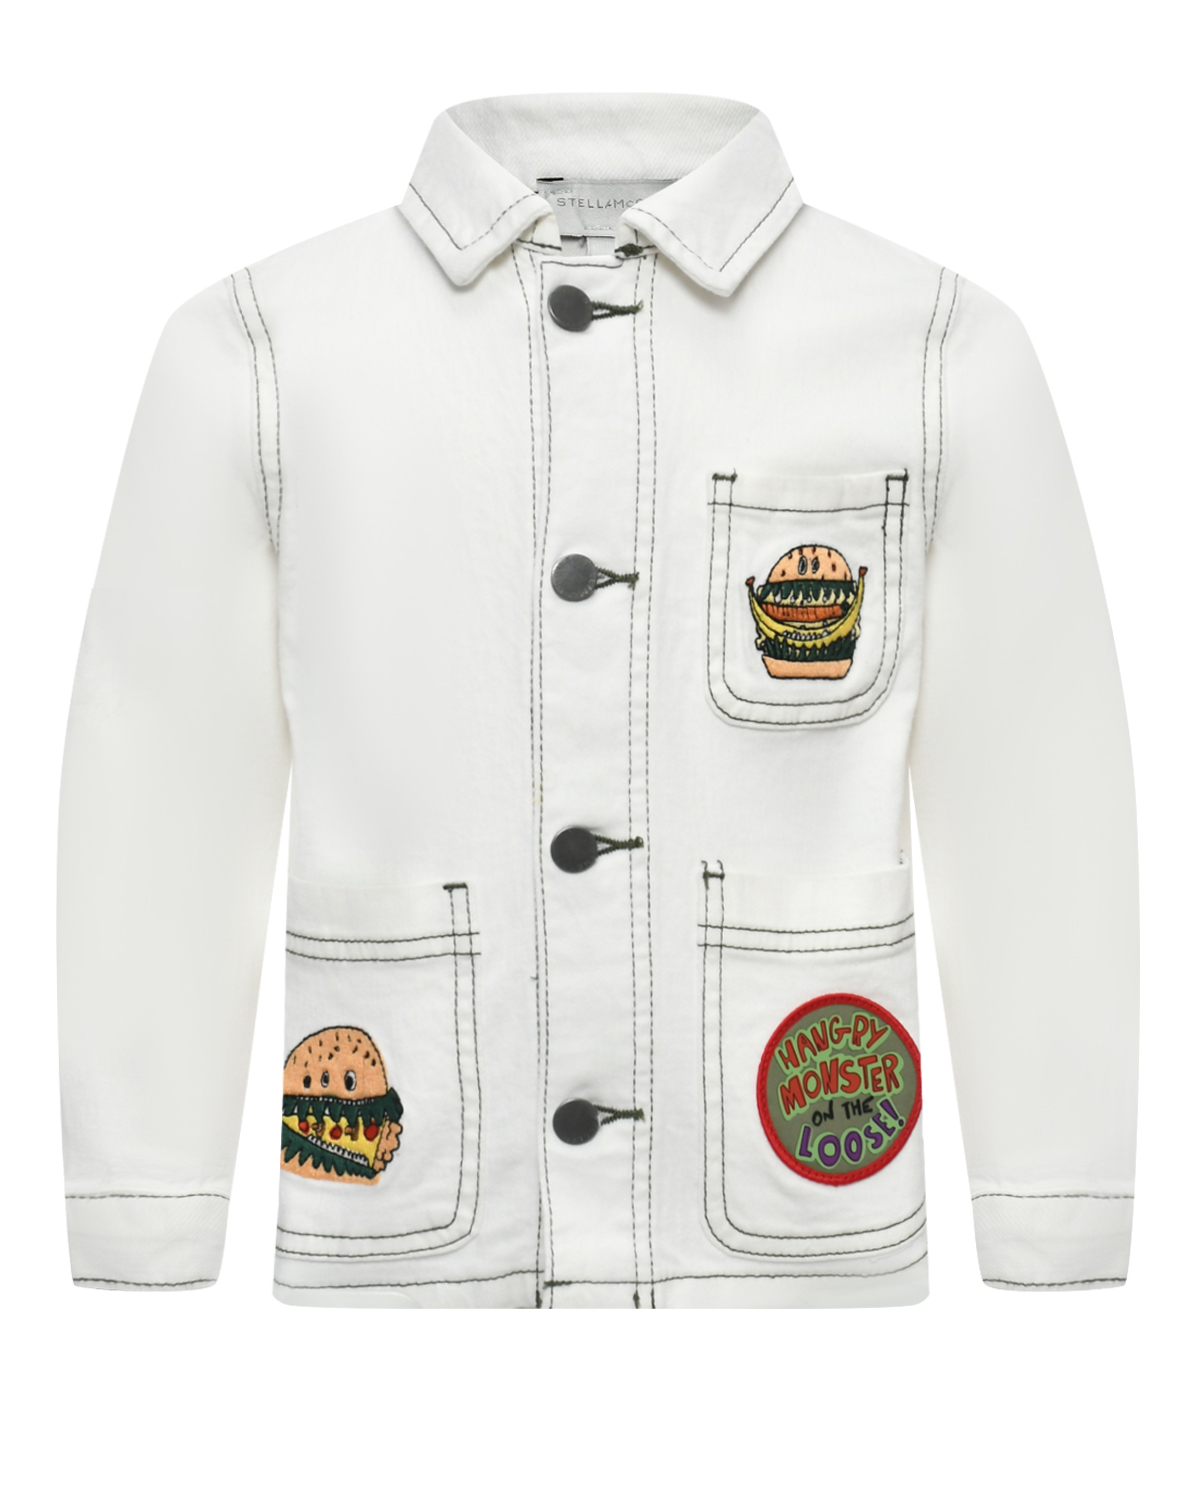 Джинсовая куртка с аппликациями Stella McCartney, размер 116, цвет белый - фото 1